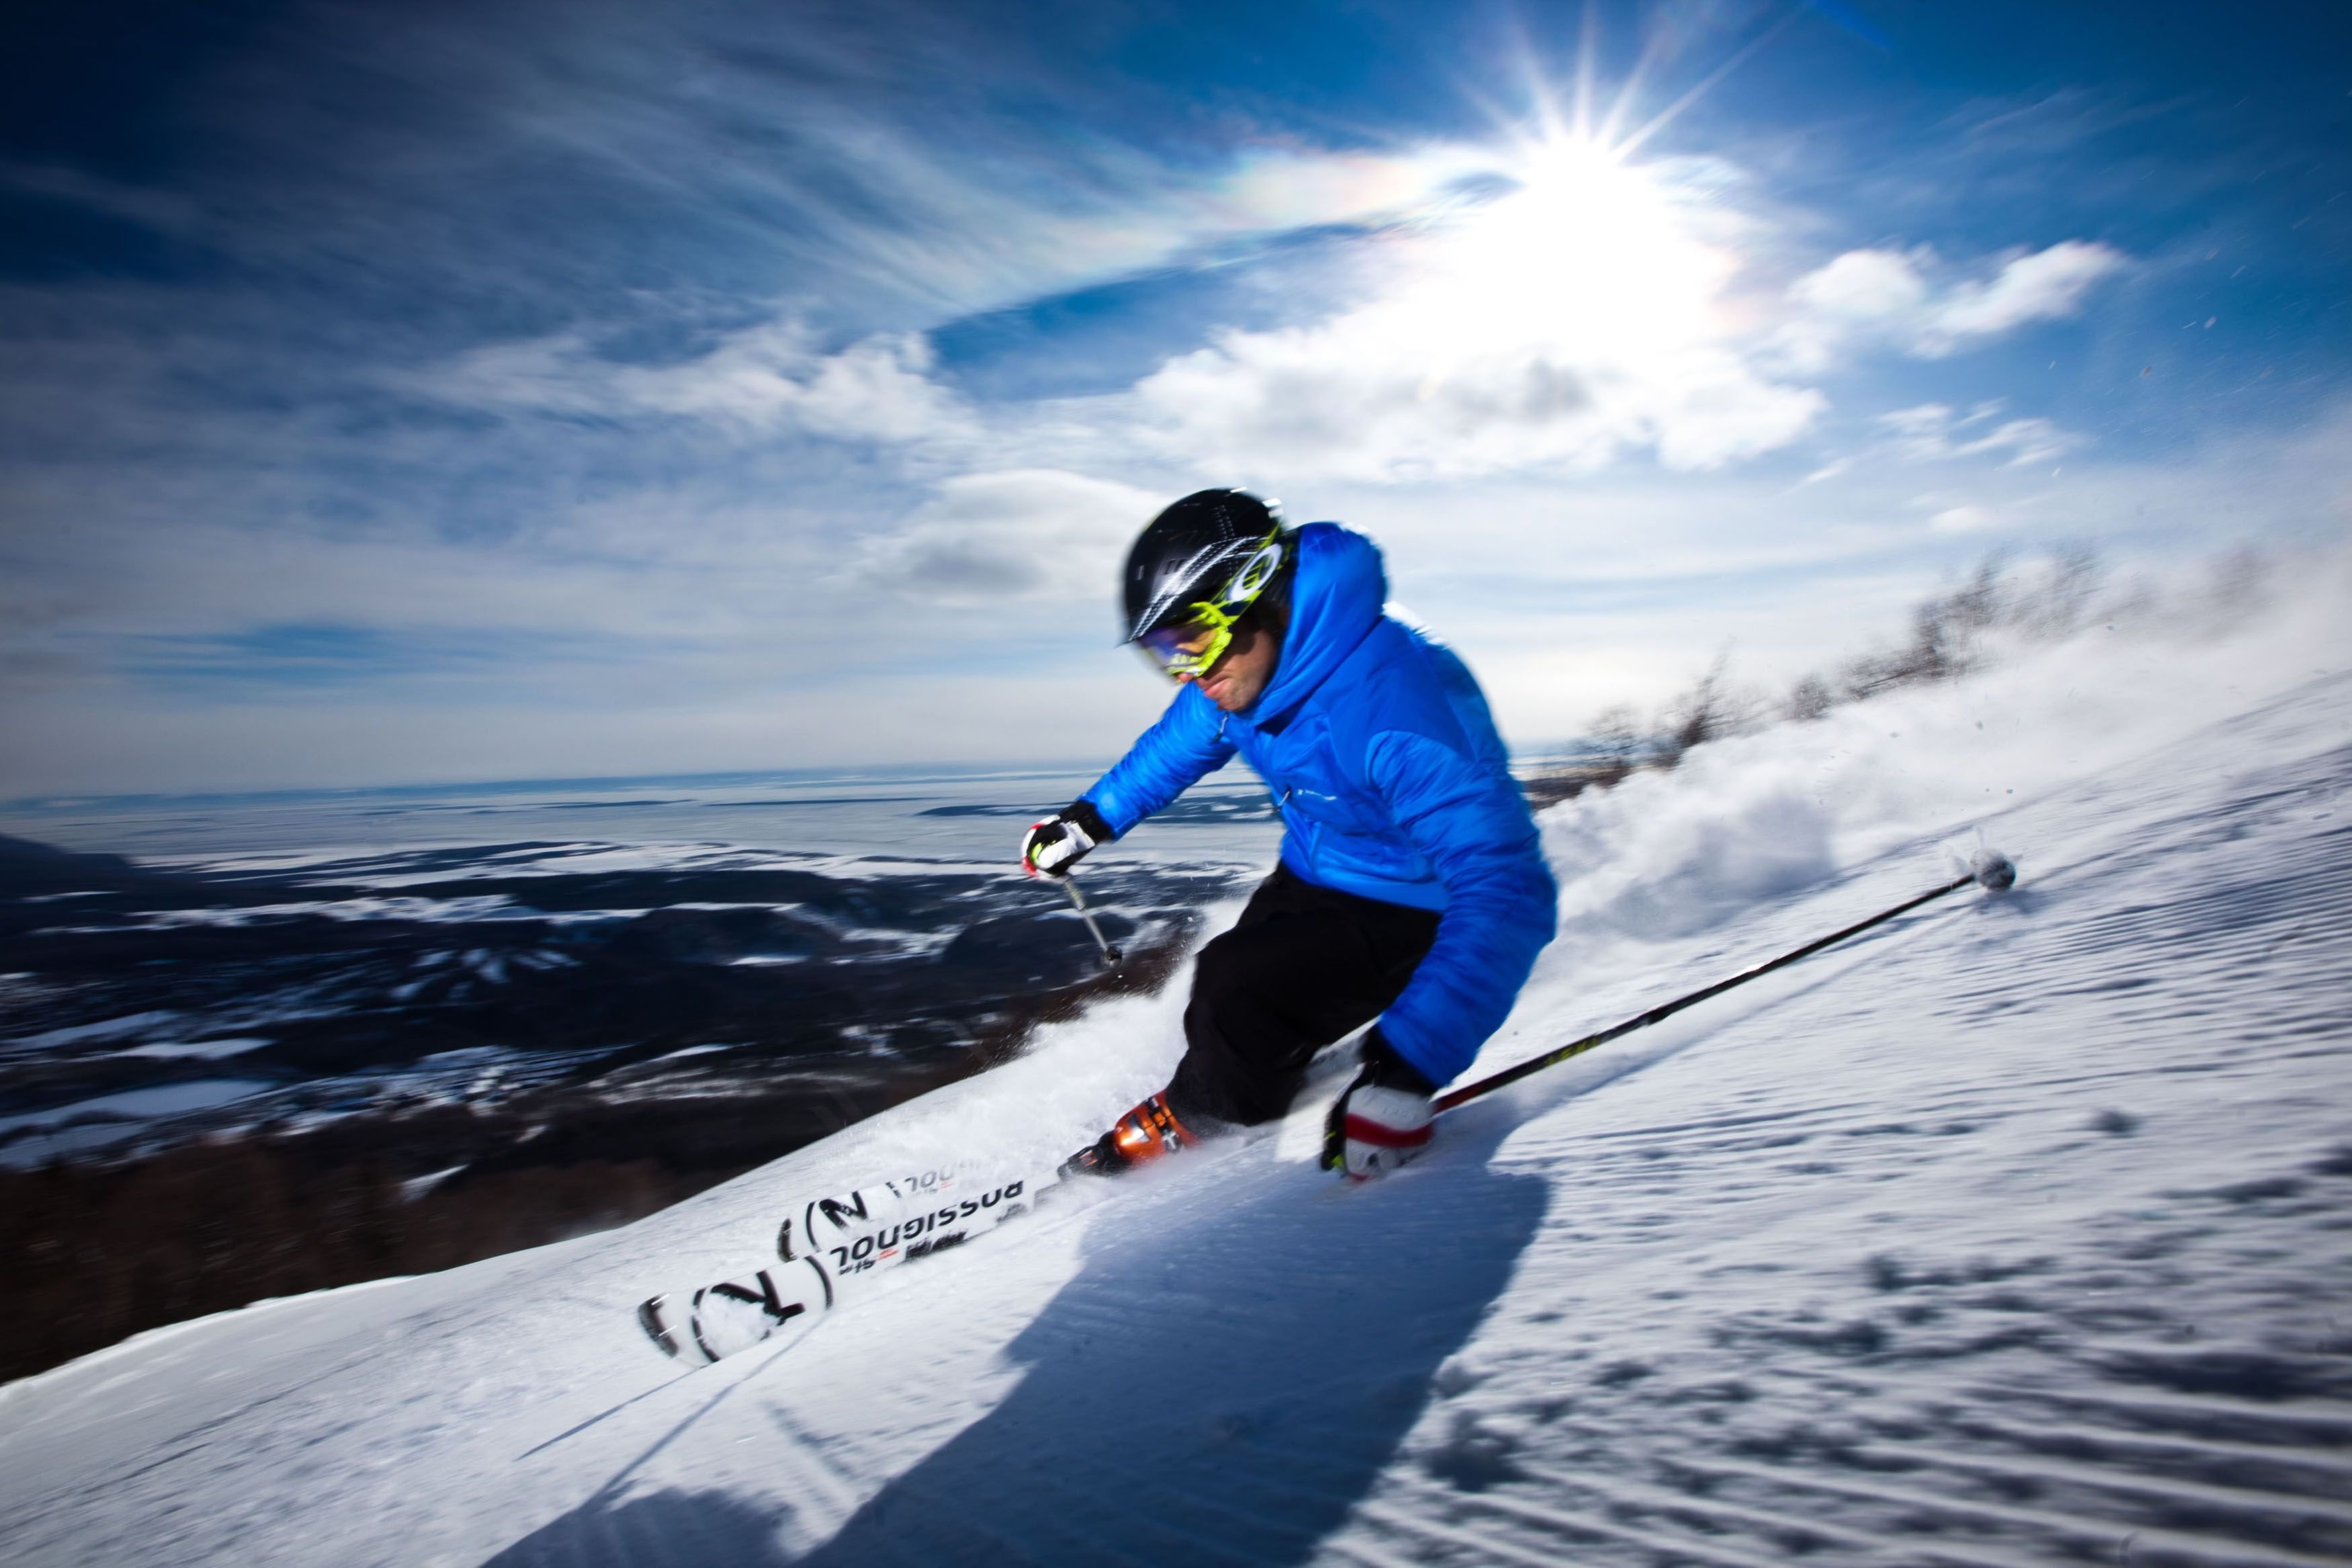 Great skiing. Горнолыжник на склоне. Скоростные лыжи. Скоростной спуск горнолыжный спорт. Даунхилл лыжи.